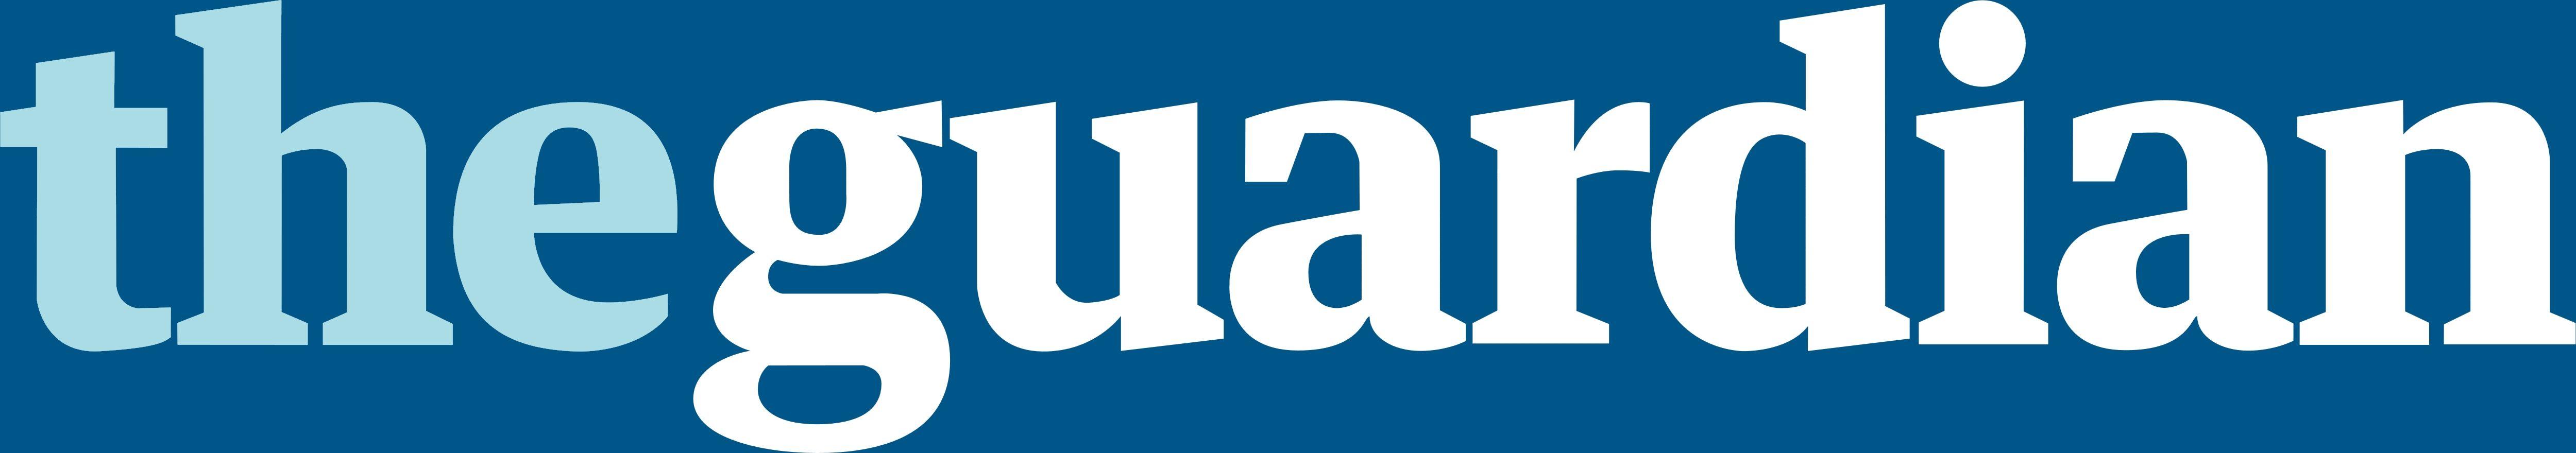 Guardian Logo - The Guardian